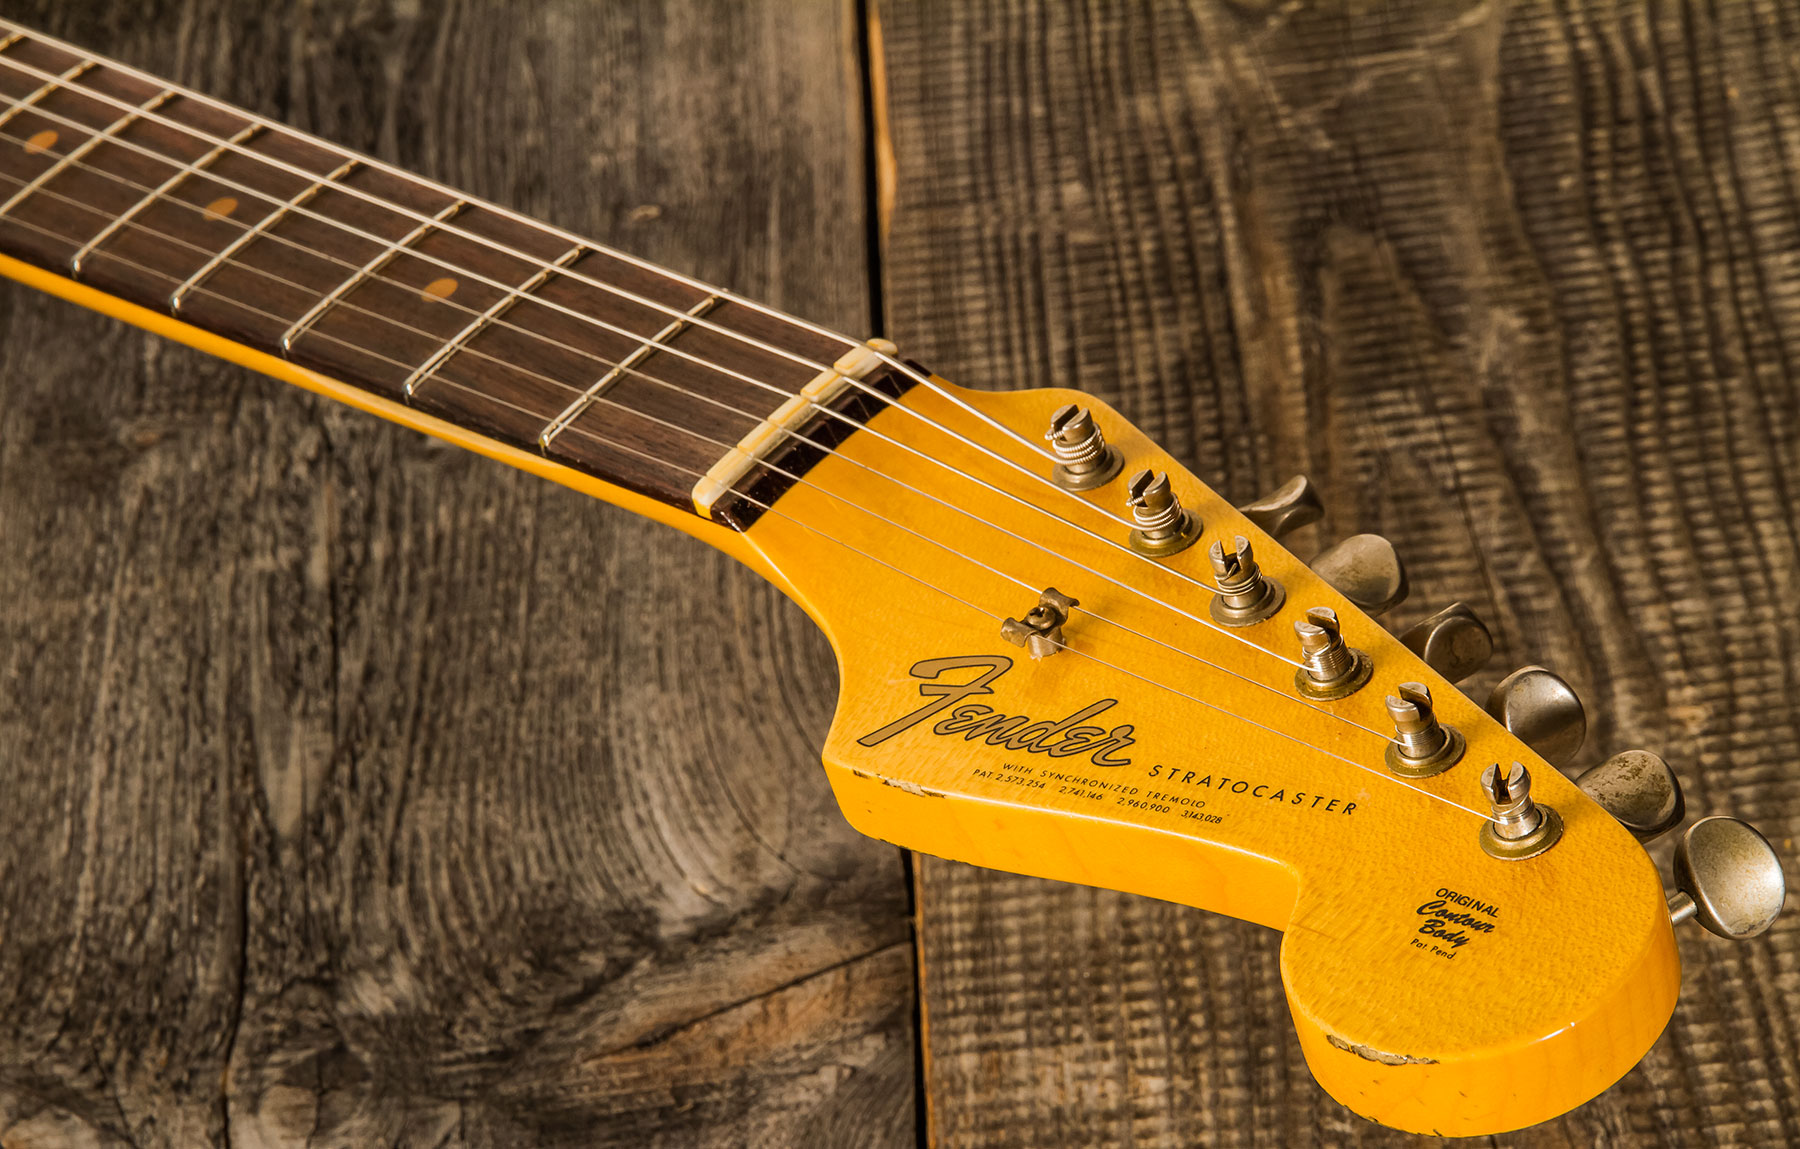 Fender Custom Shop Strat 1964 3s Trem Rw - Journeyman Relic Target 3-color Sunburst - Str shape electric guitar - Variation 4